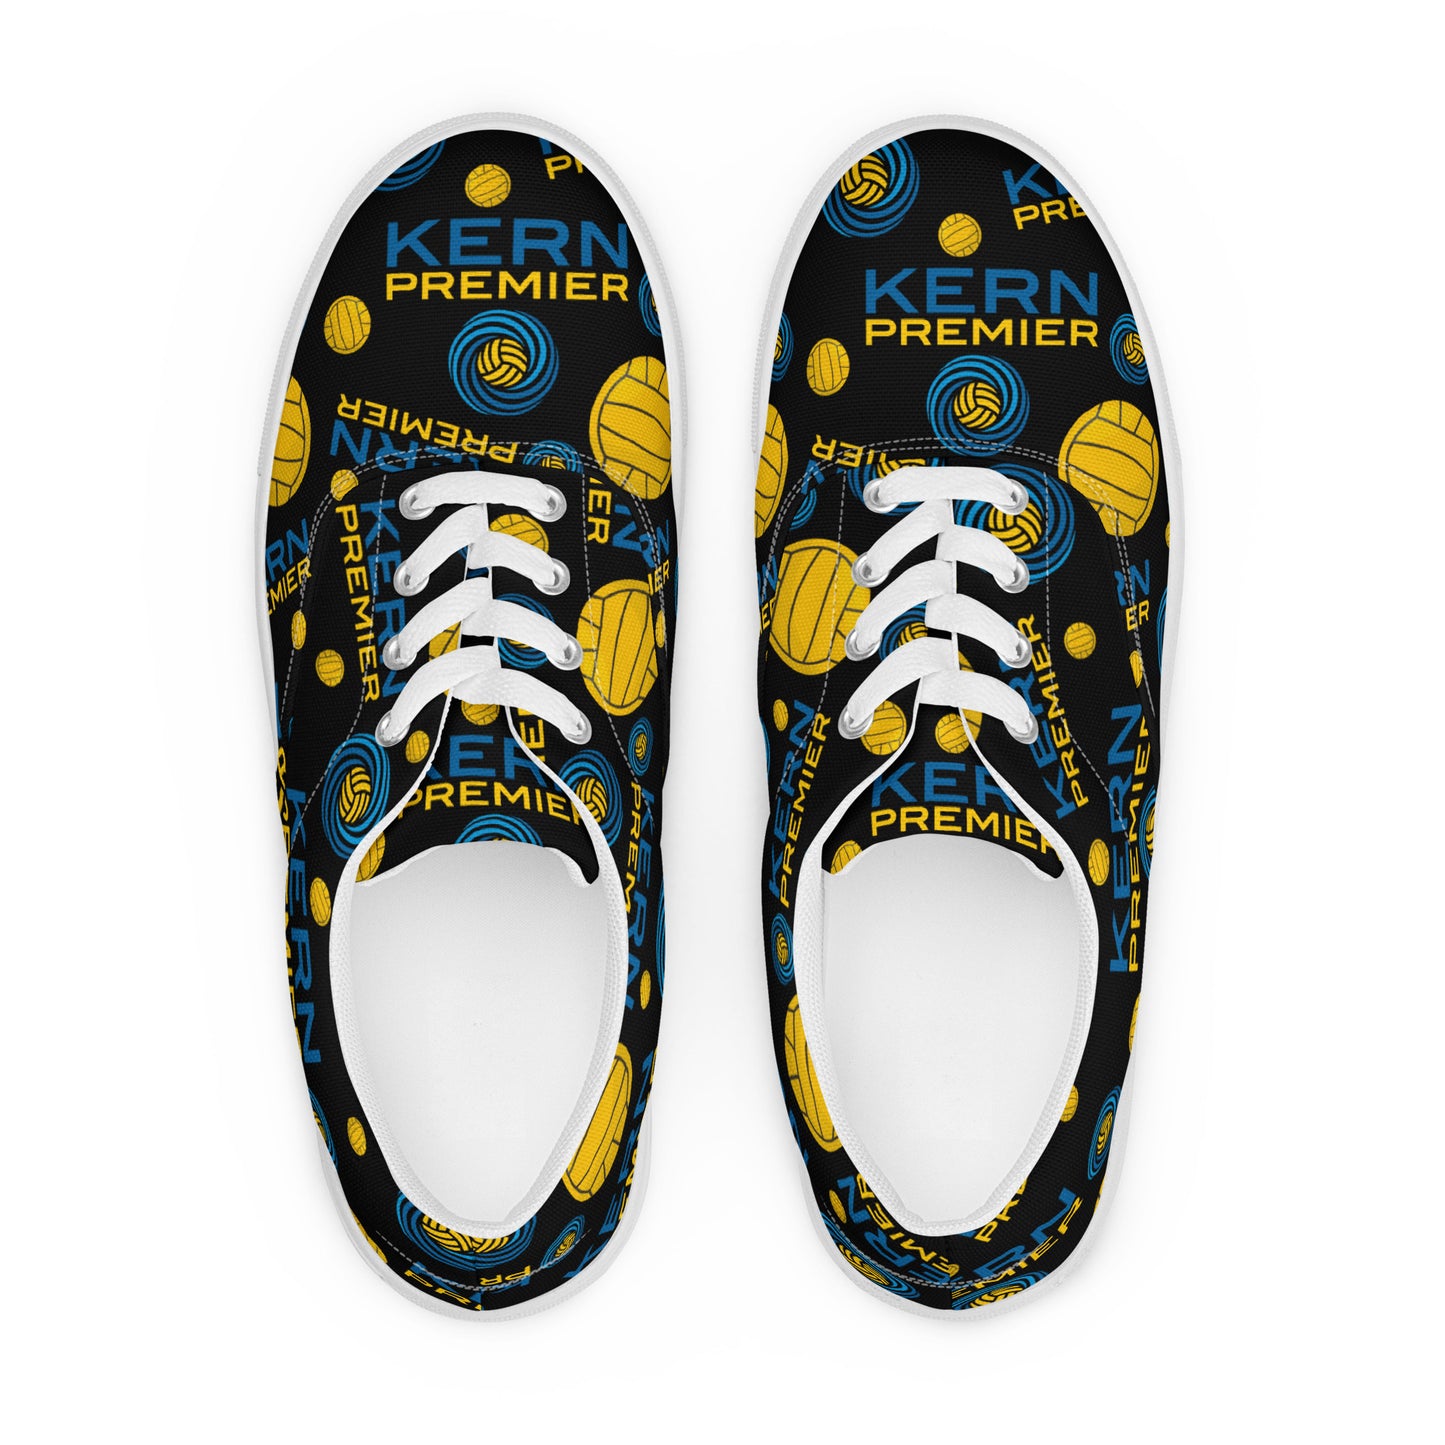 Kern Premier Men’s lace-up canvas shoes